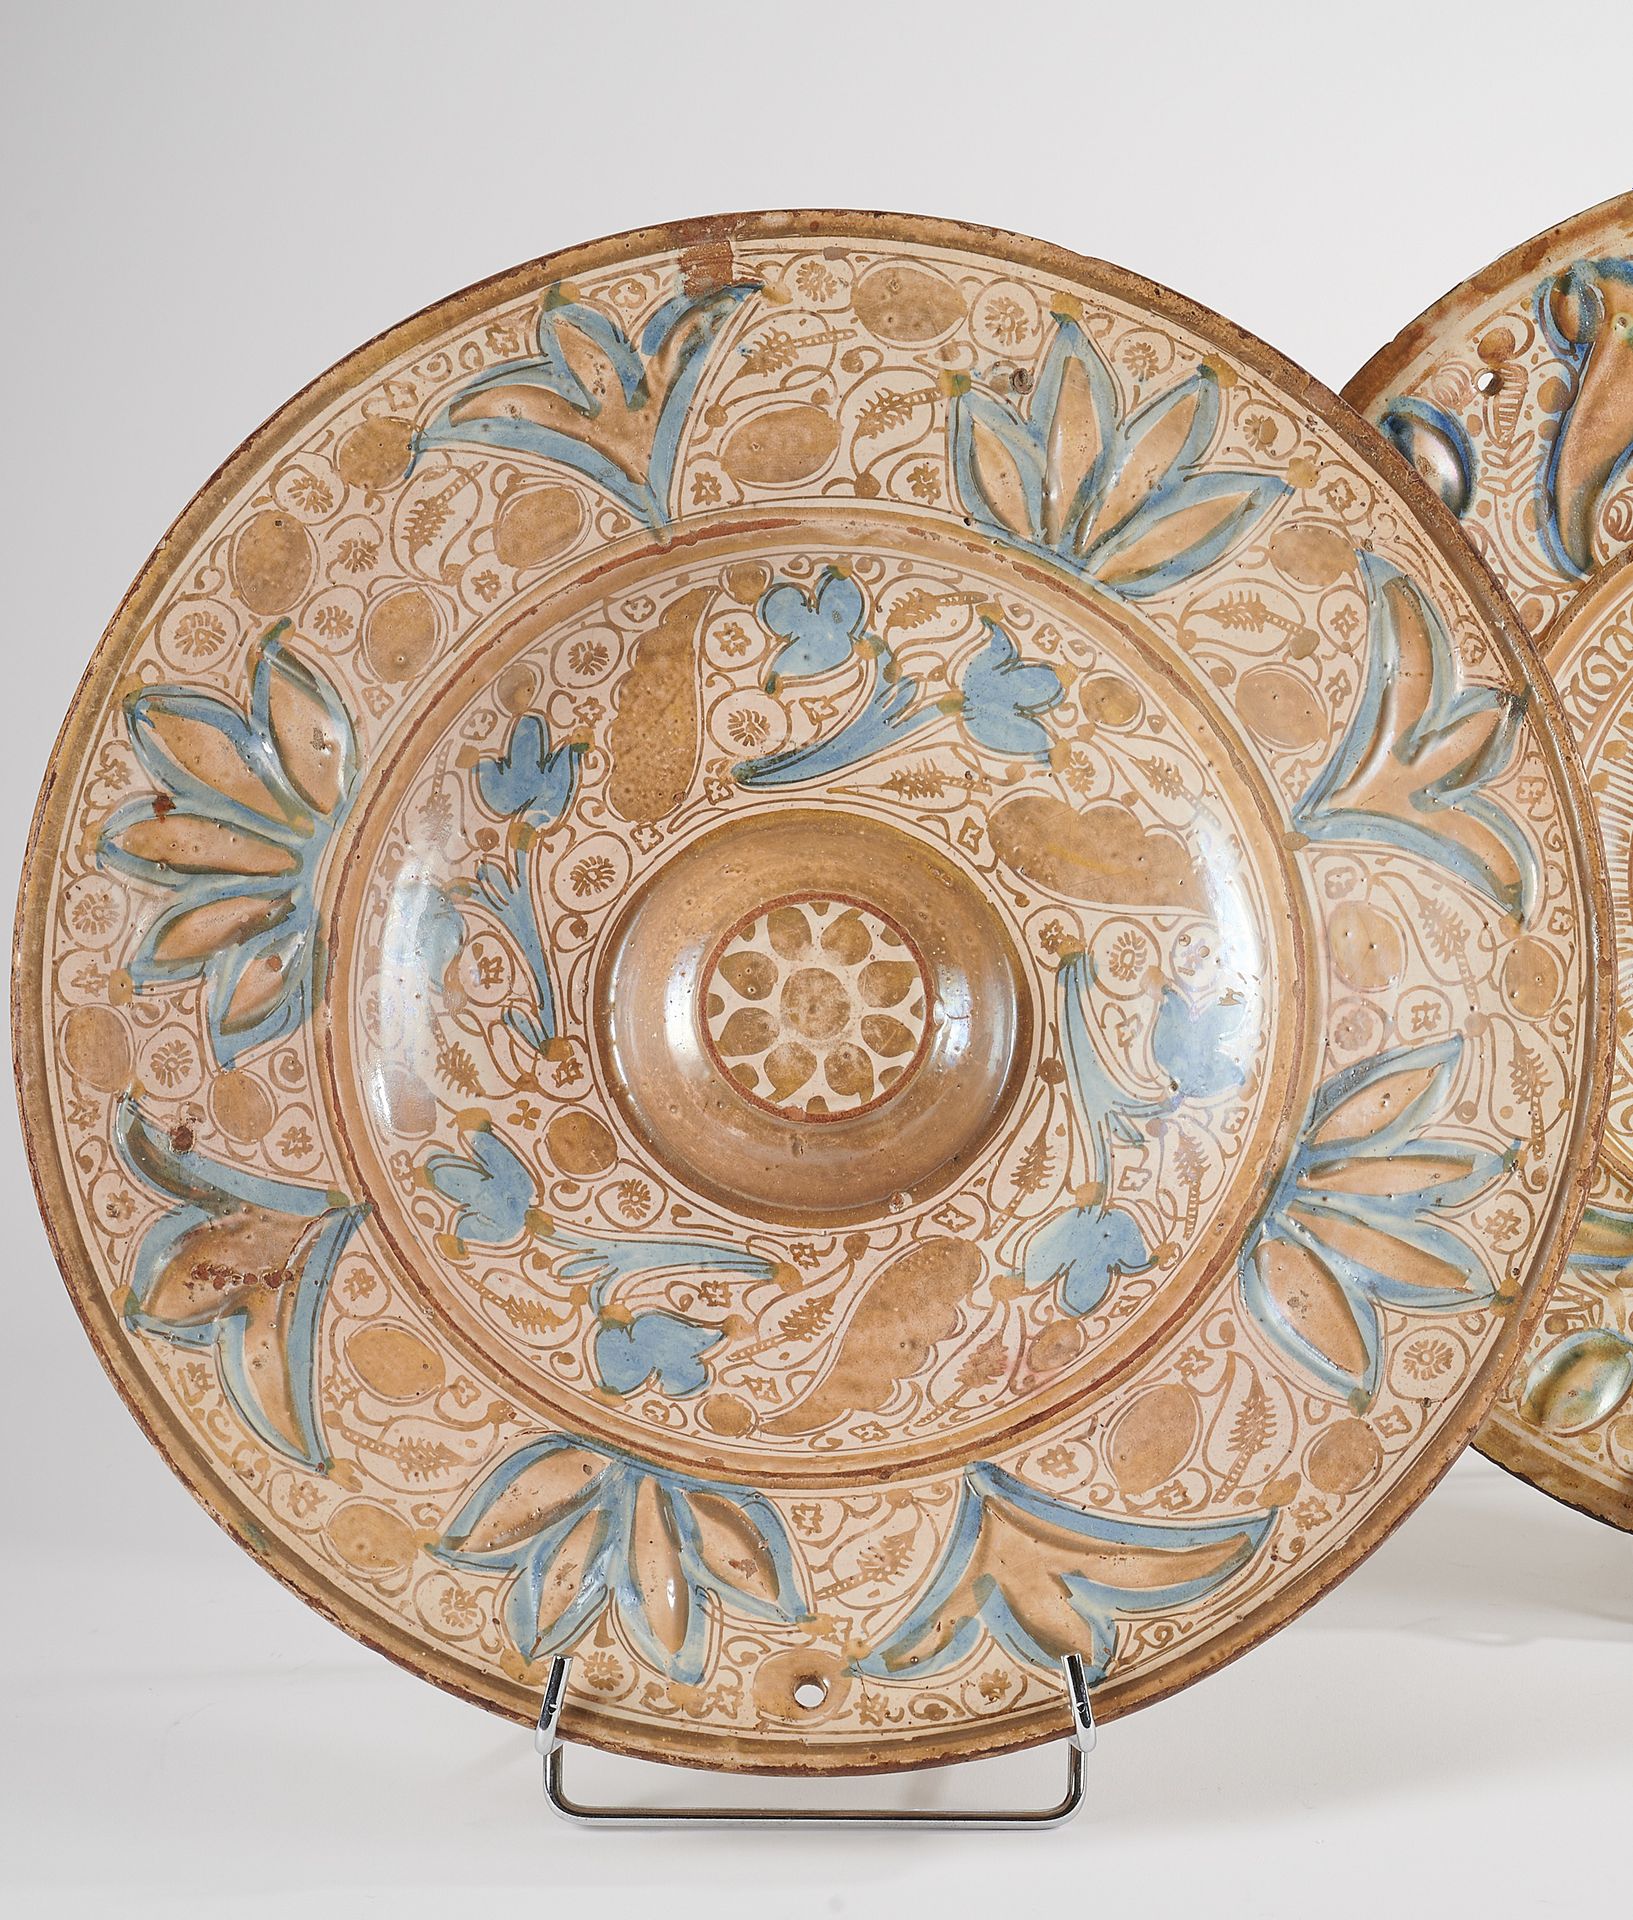 Null 马尼塞斯 - 17世纪 
大圆盘，有金属光泽，有棕榈树、叶子和花朵的装饰。缺陷包括烧制
D. 40厘米
缺陷包括烧制，有挂孔。